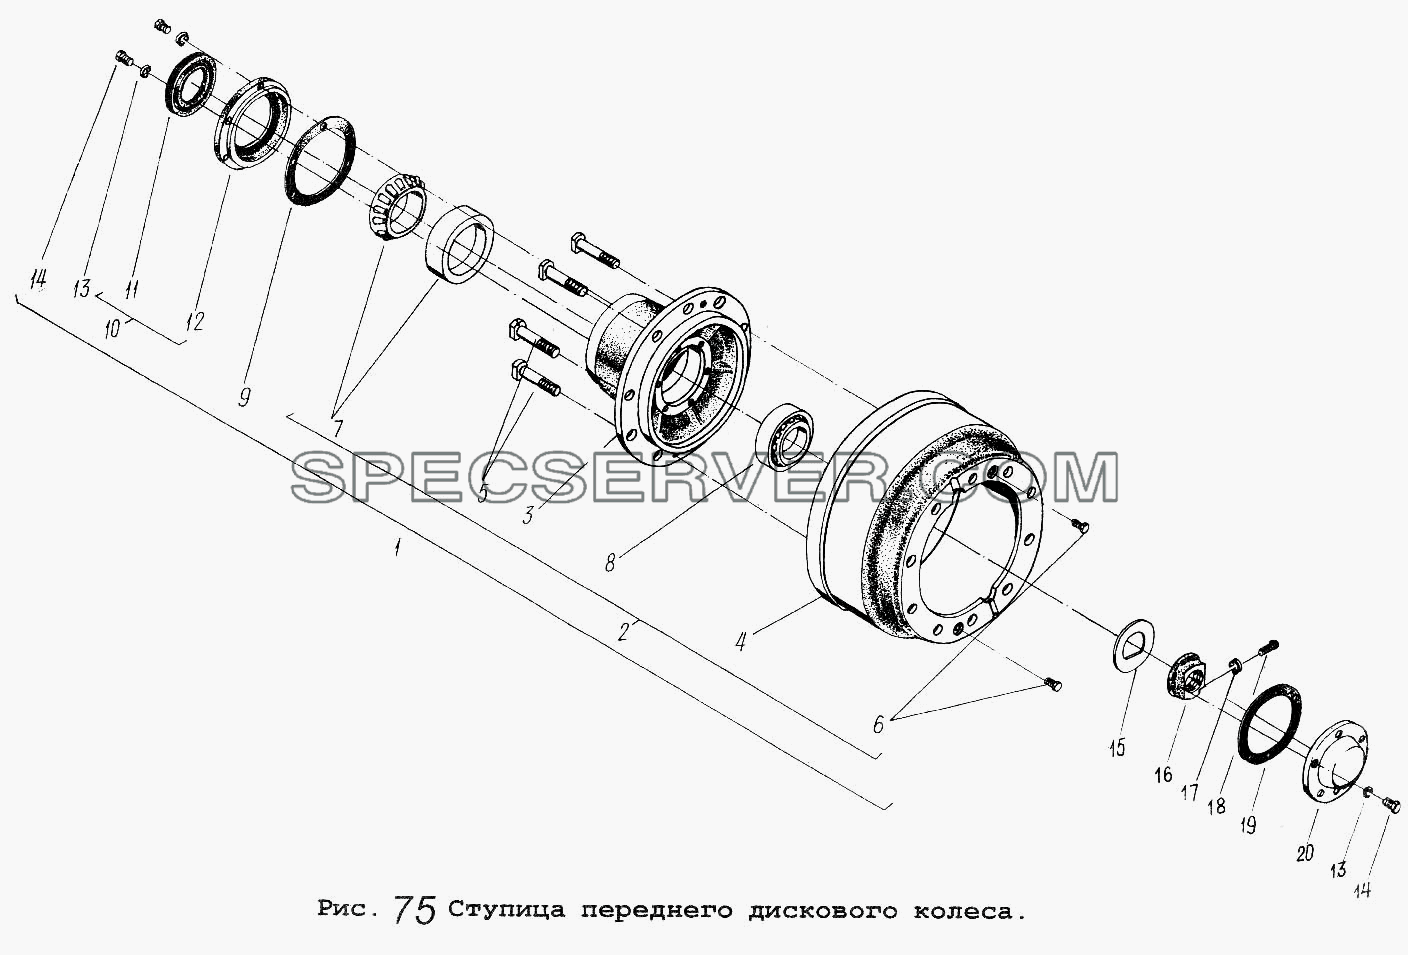 Ступица переднего дискового колеса для МАЗ-5516 (список запасных частей)